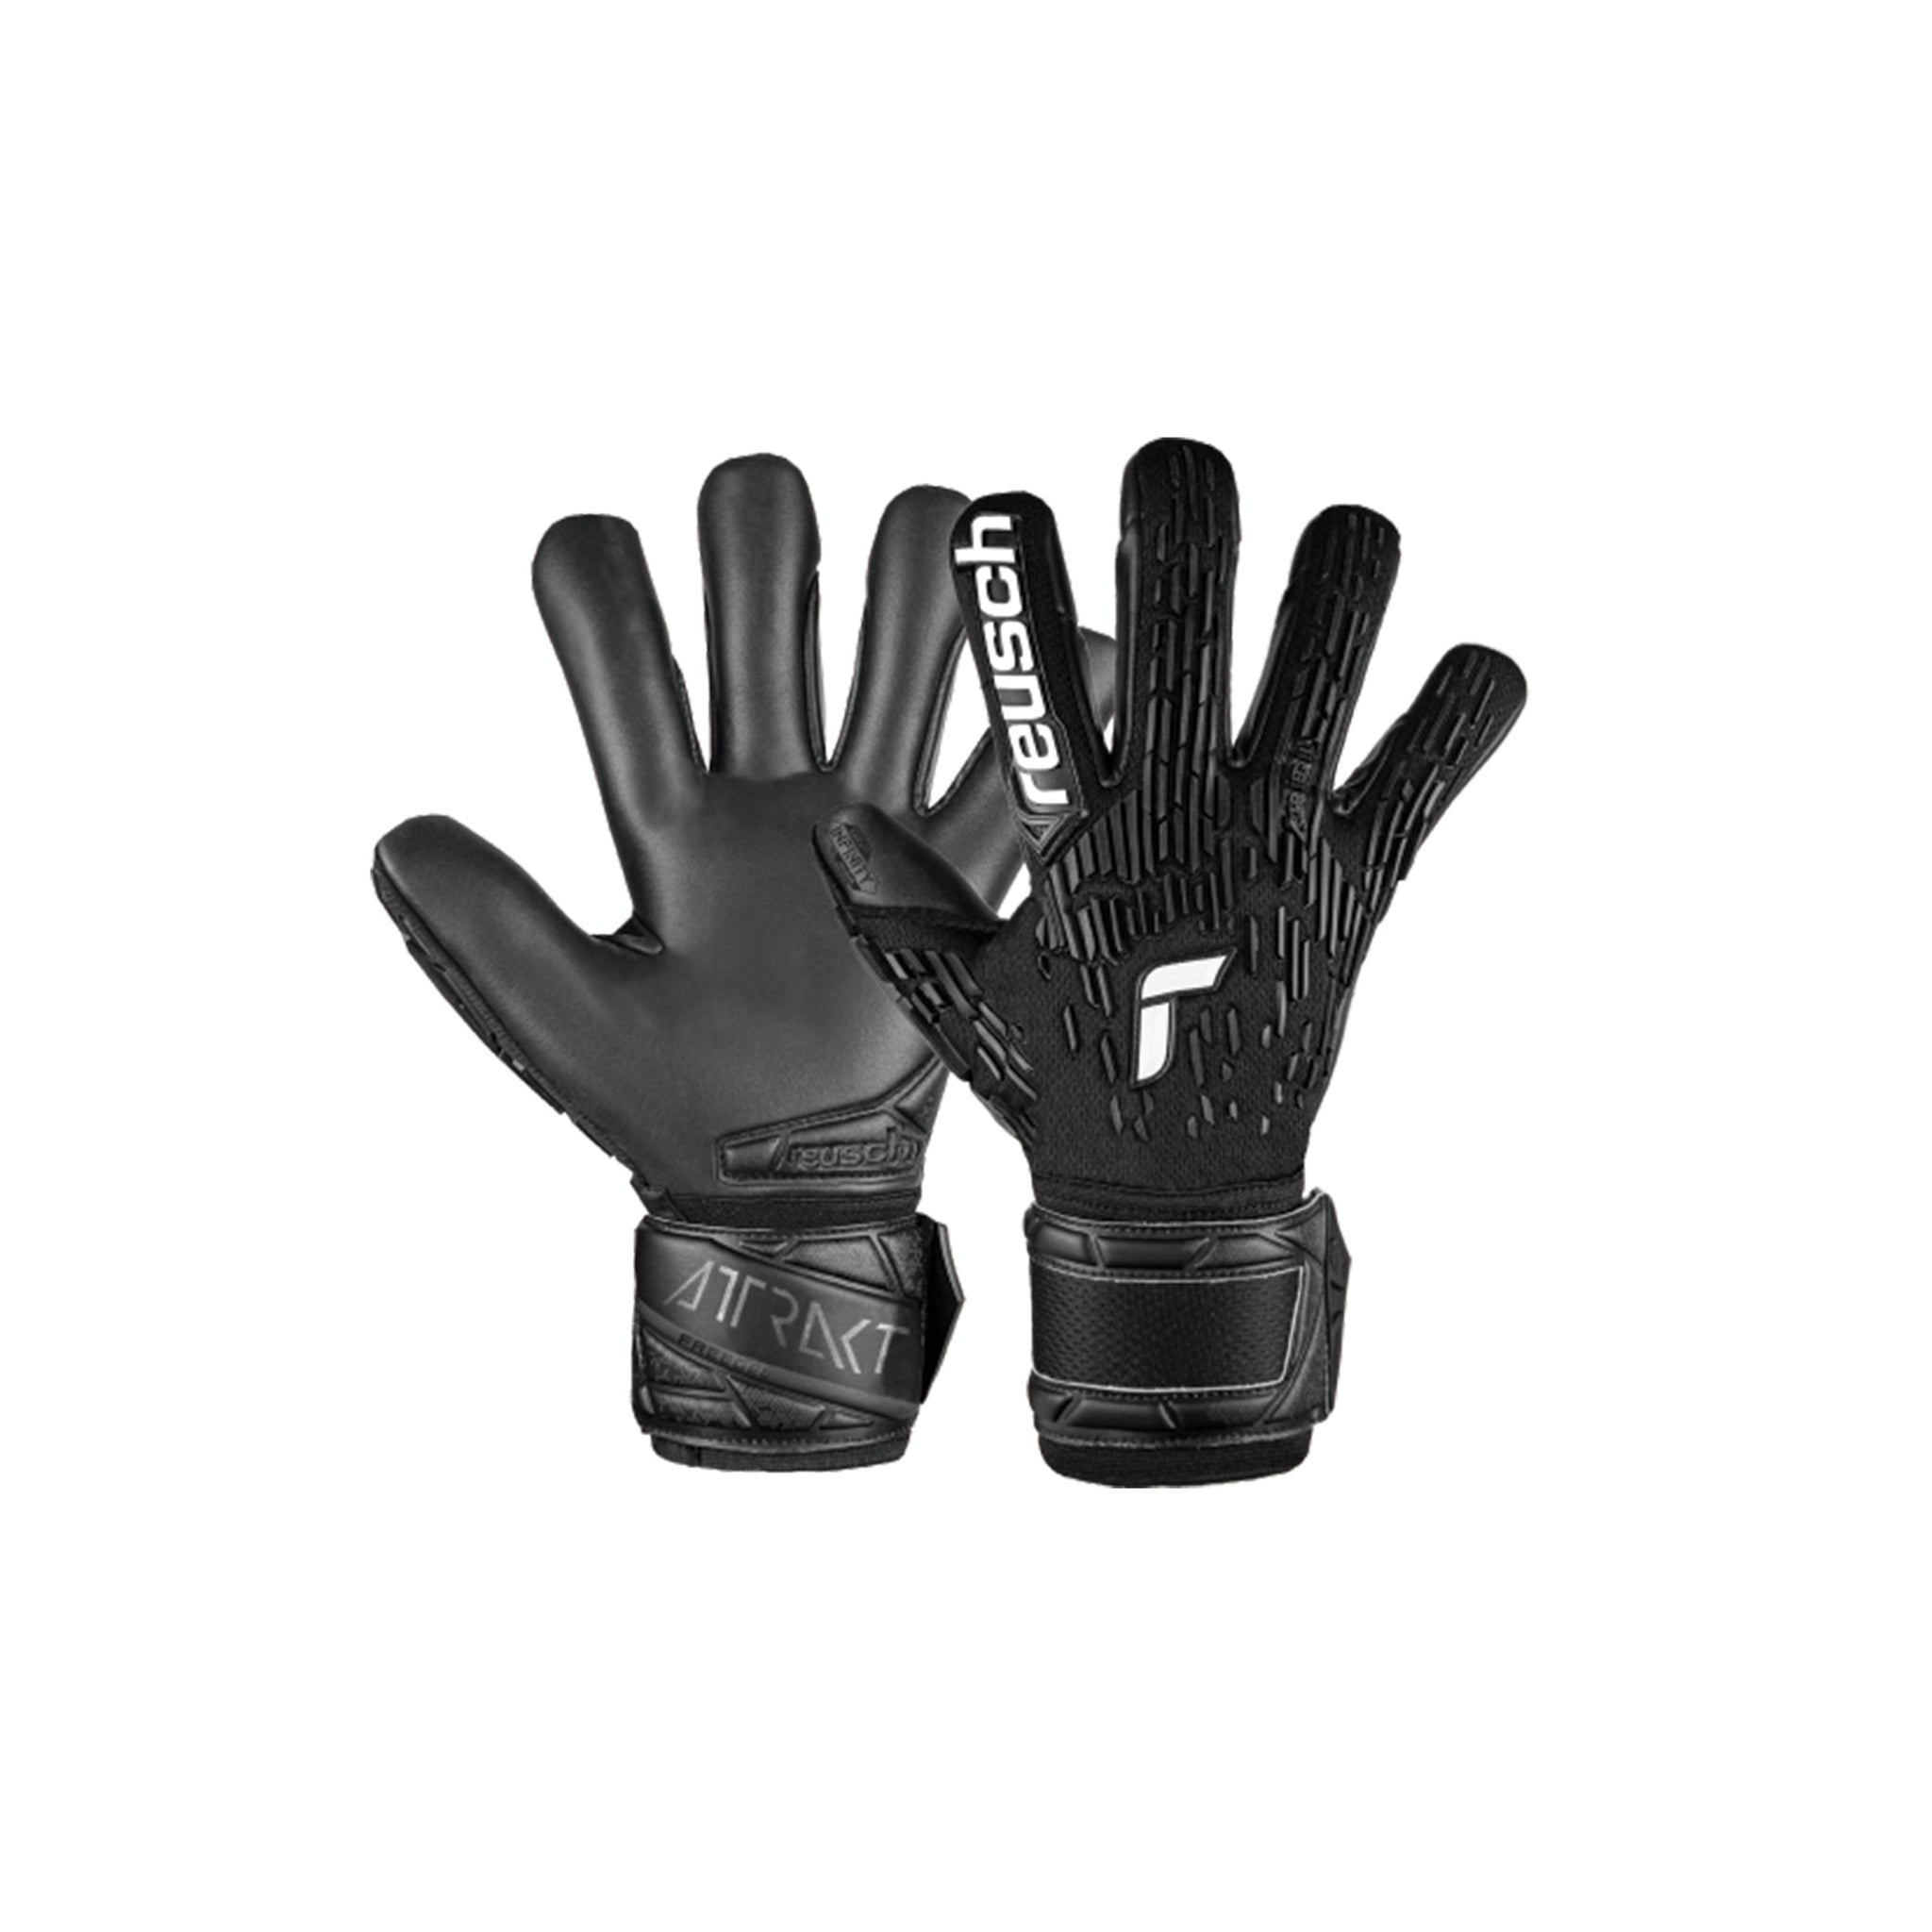 REUSCH Attrakt Freegel Infinity Finger Support Gloves